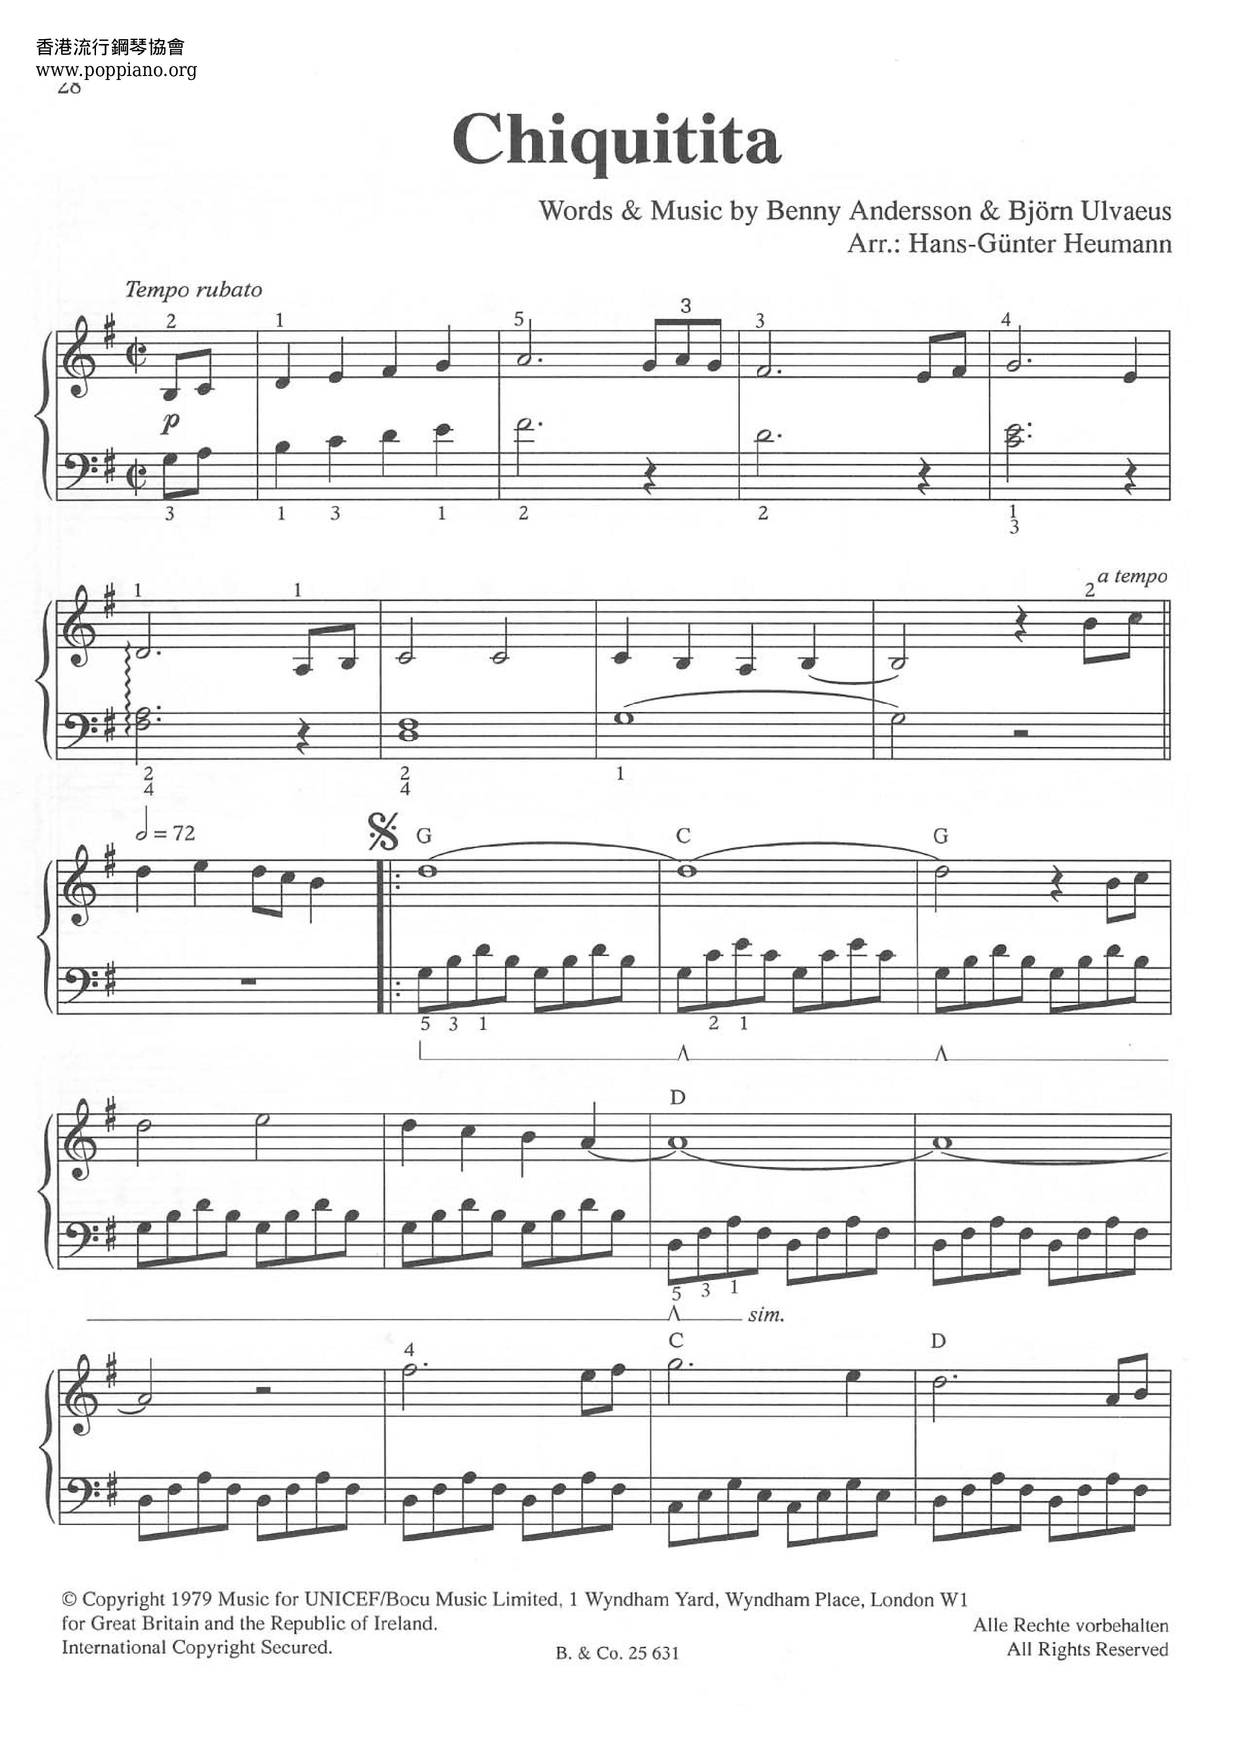 ABBA-Chiquitita Sheet Music pdf, - Free Score Download ★